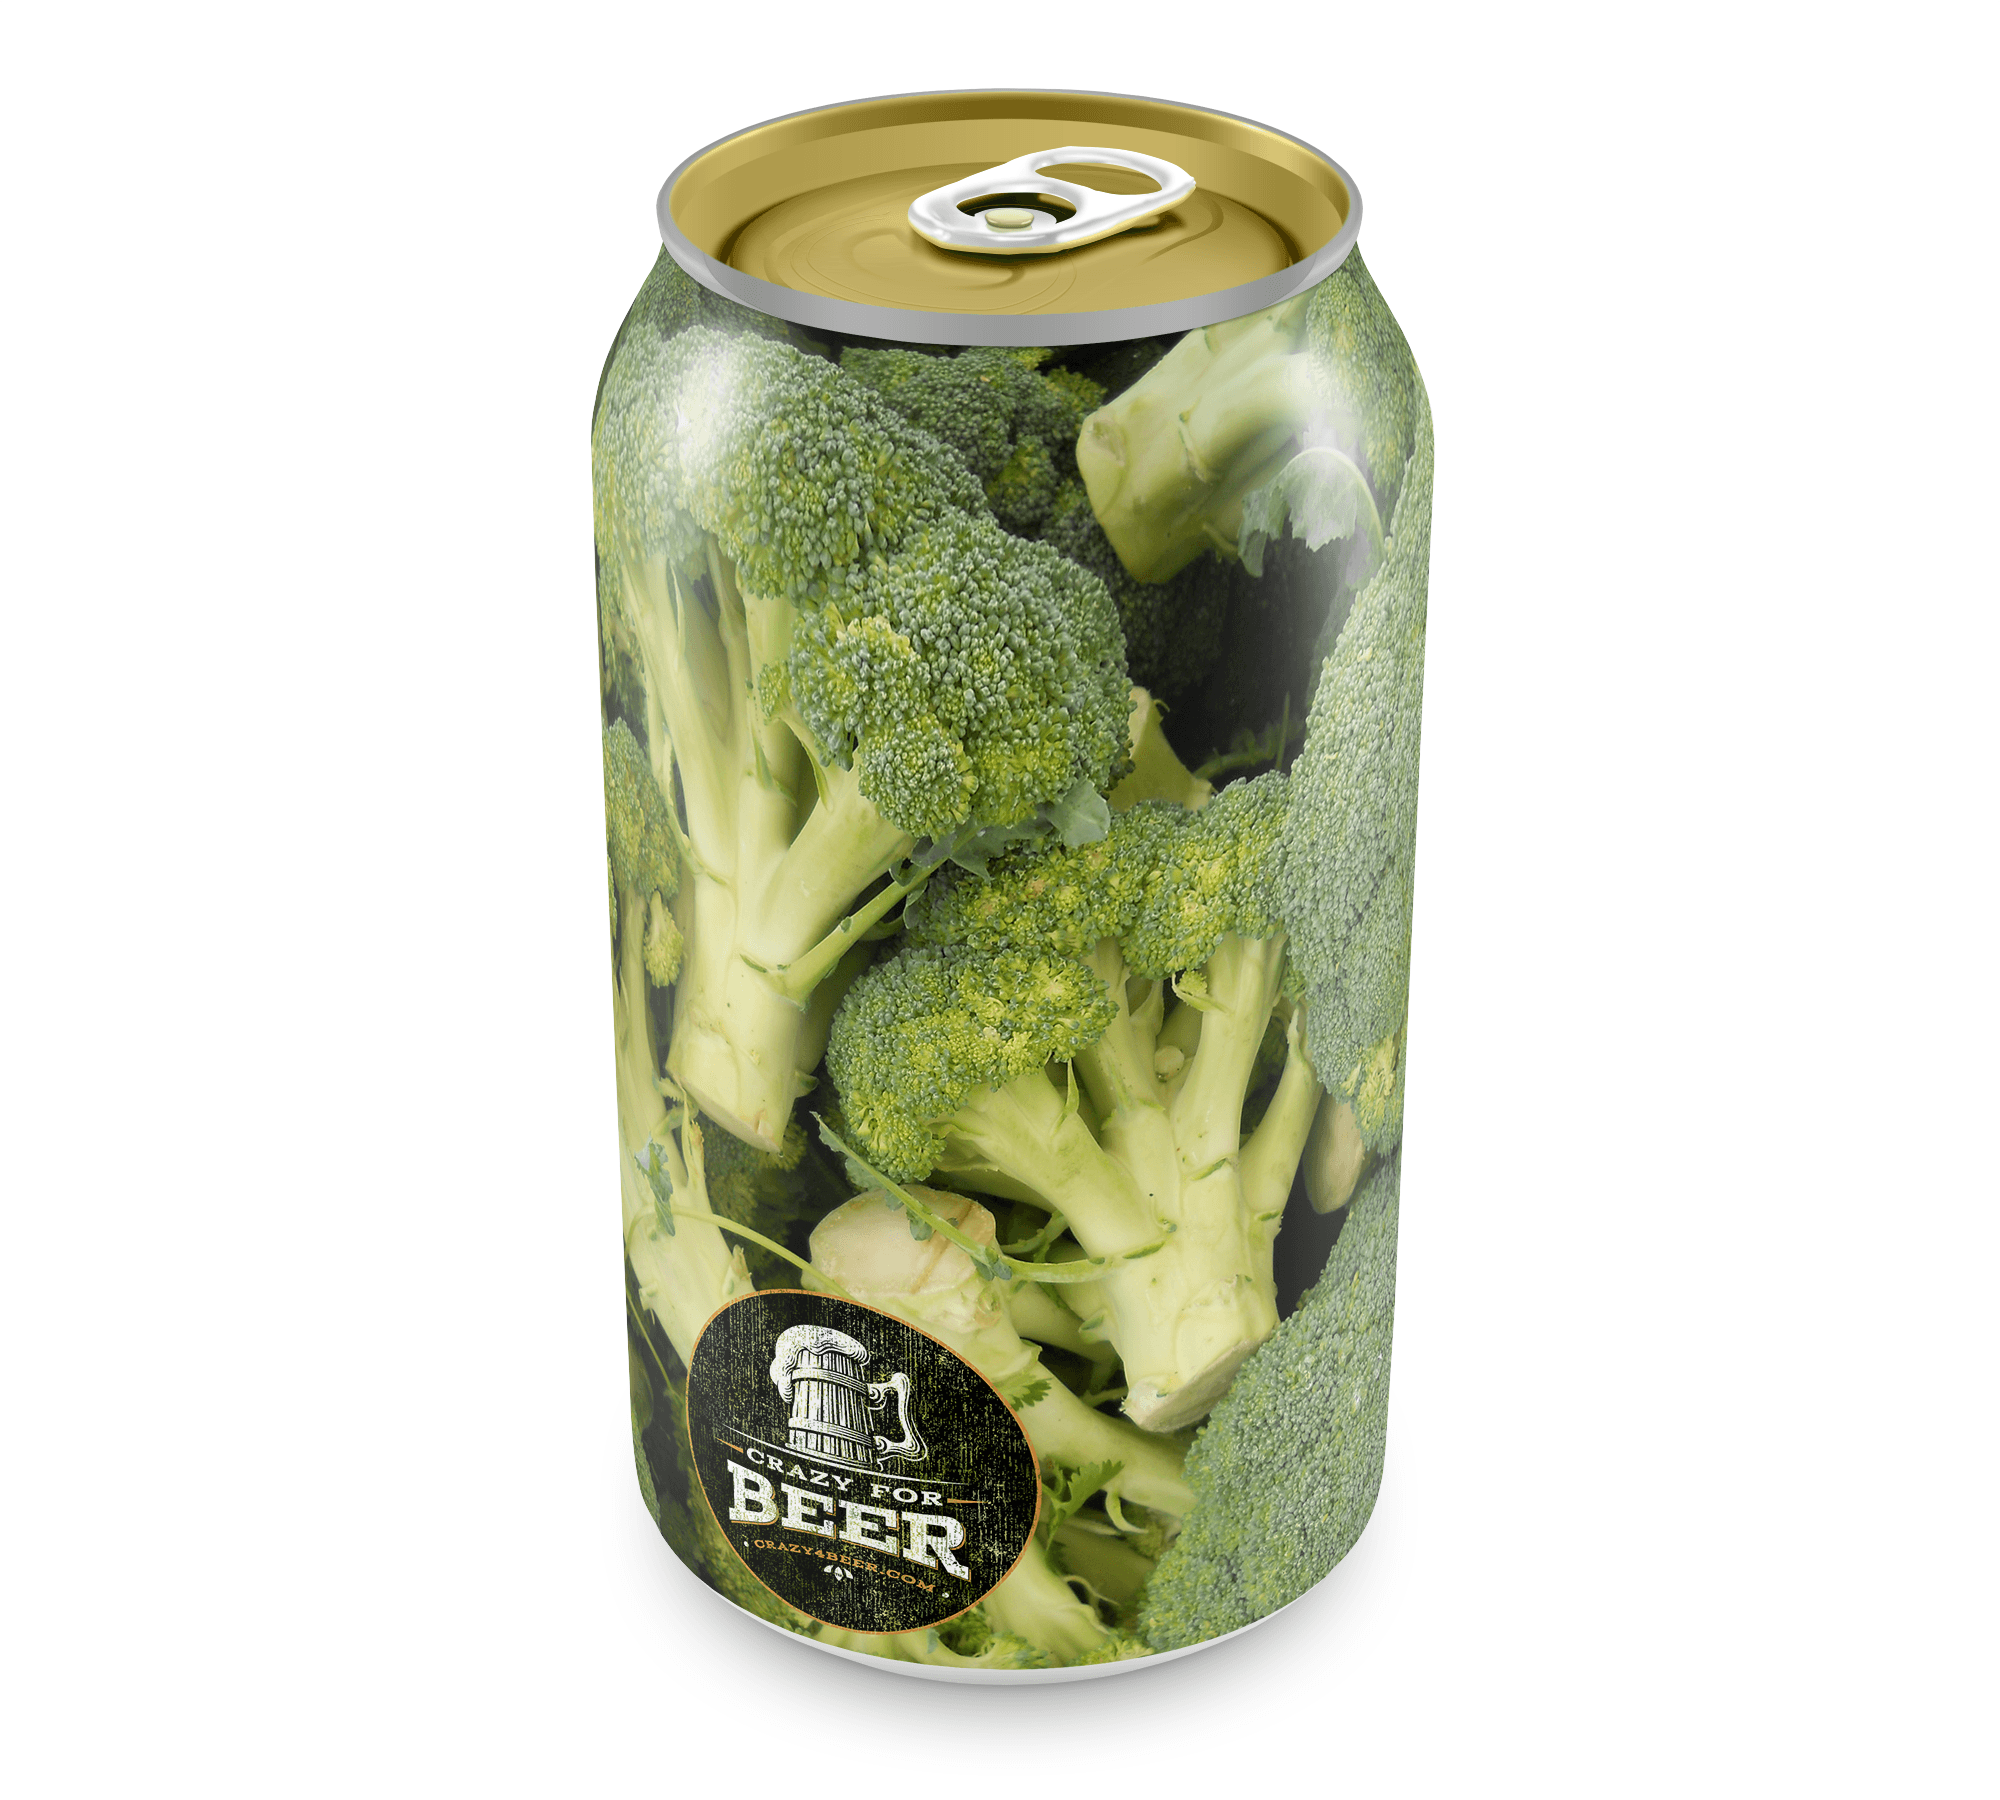 Broccoli Beer